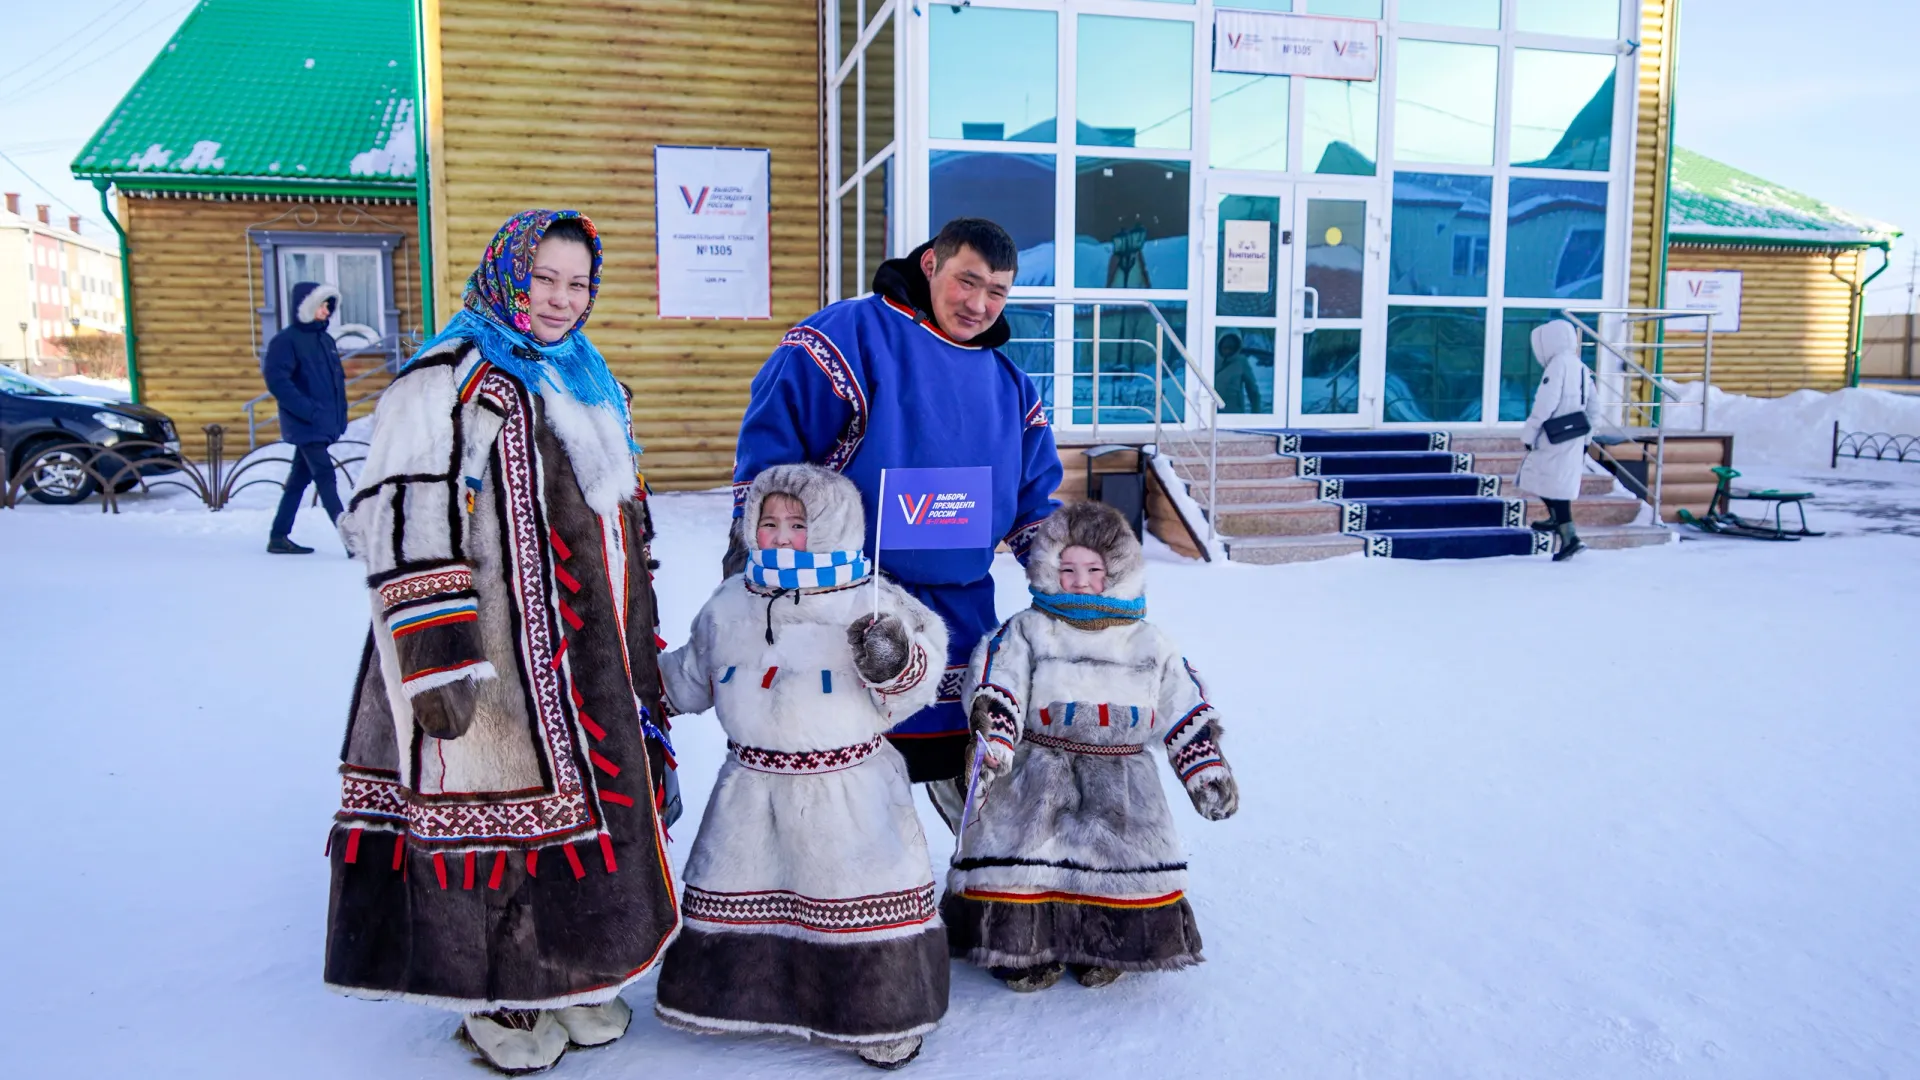 Коренные жители Ямала преодолели 150 км, чтобы проголосовать. Фото: Евгений Алабушев, администрация Ямальского района